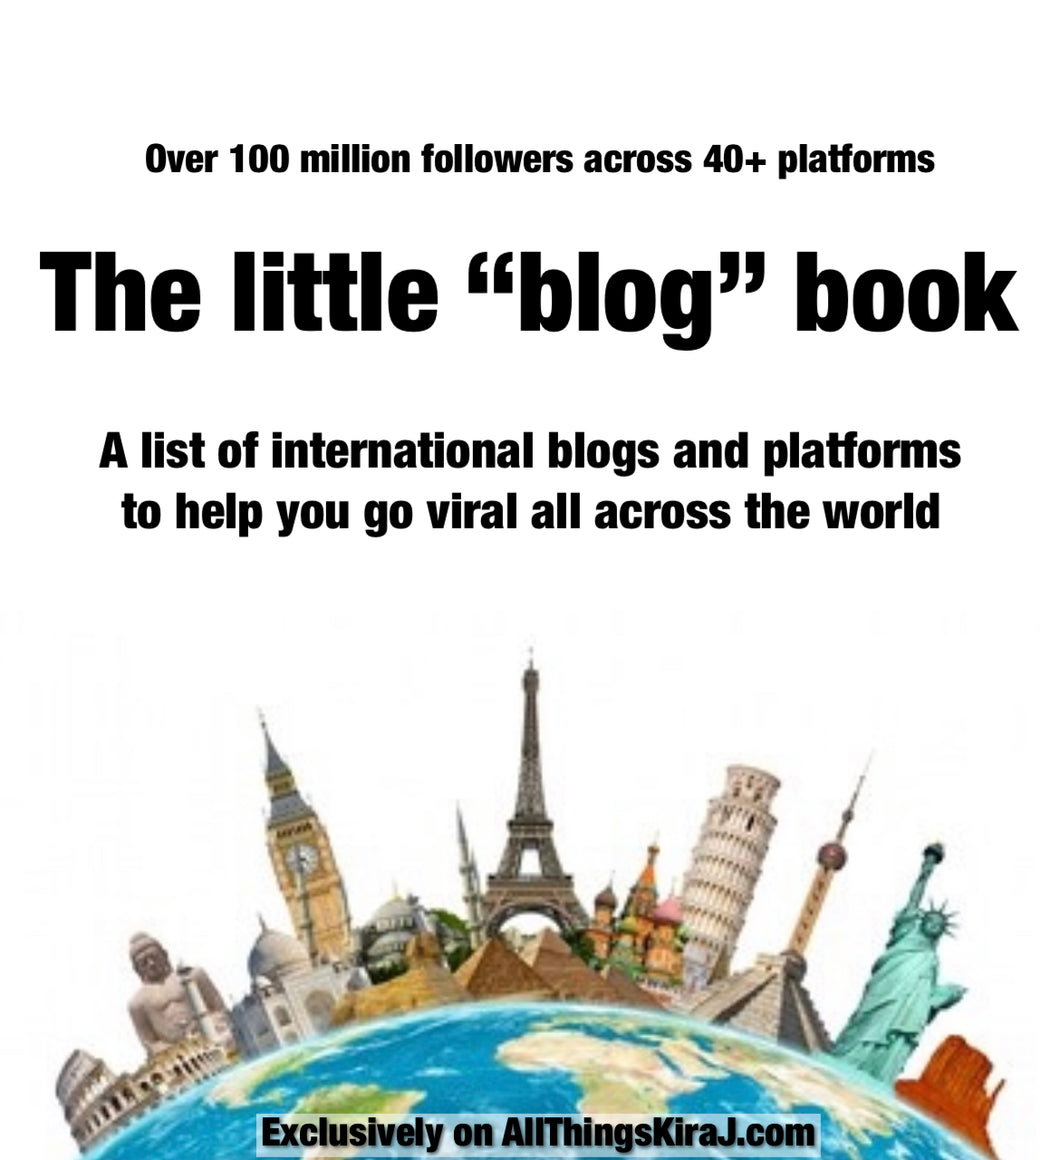 The Little “blog” book